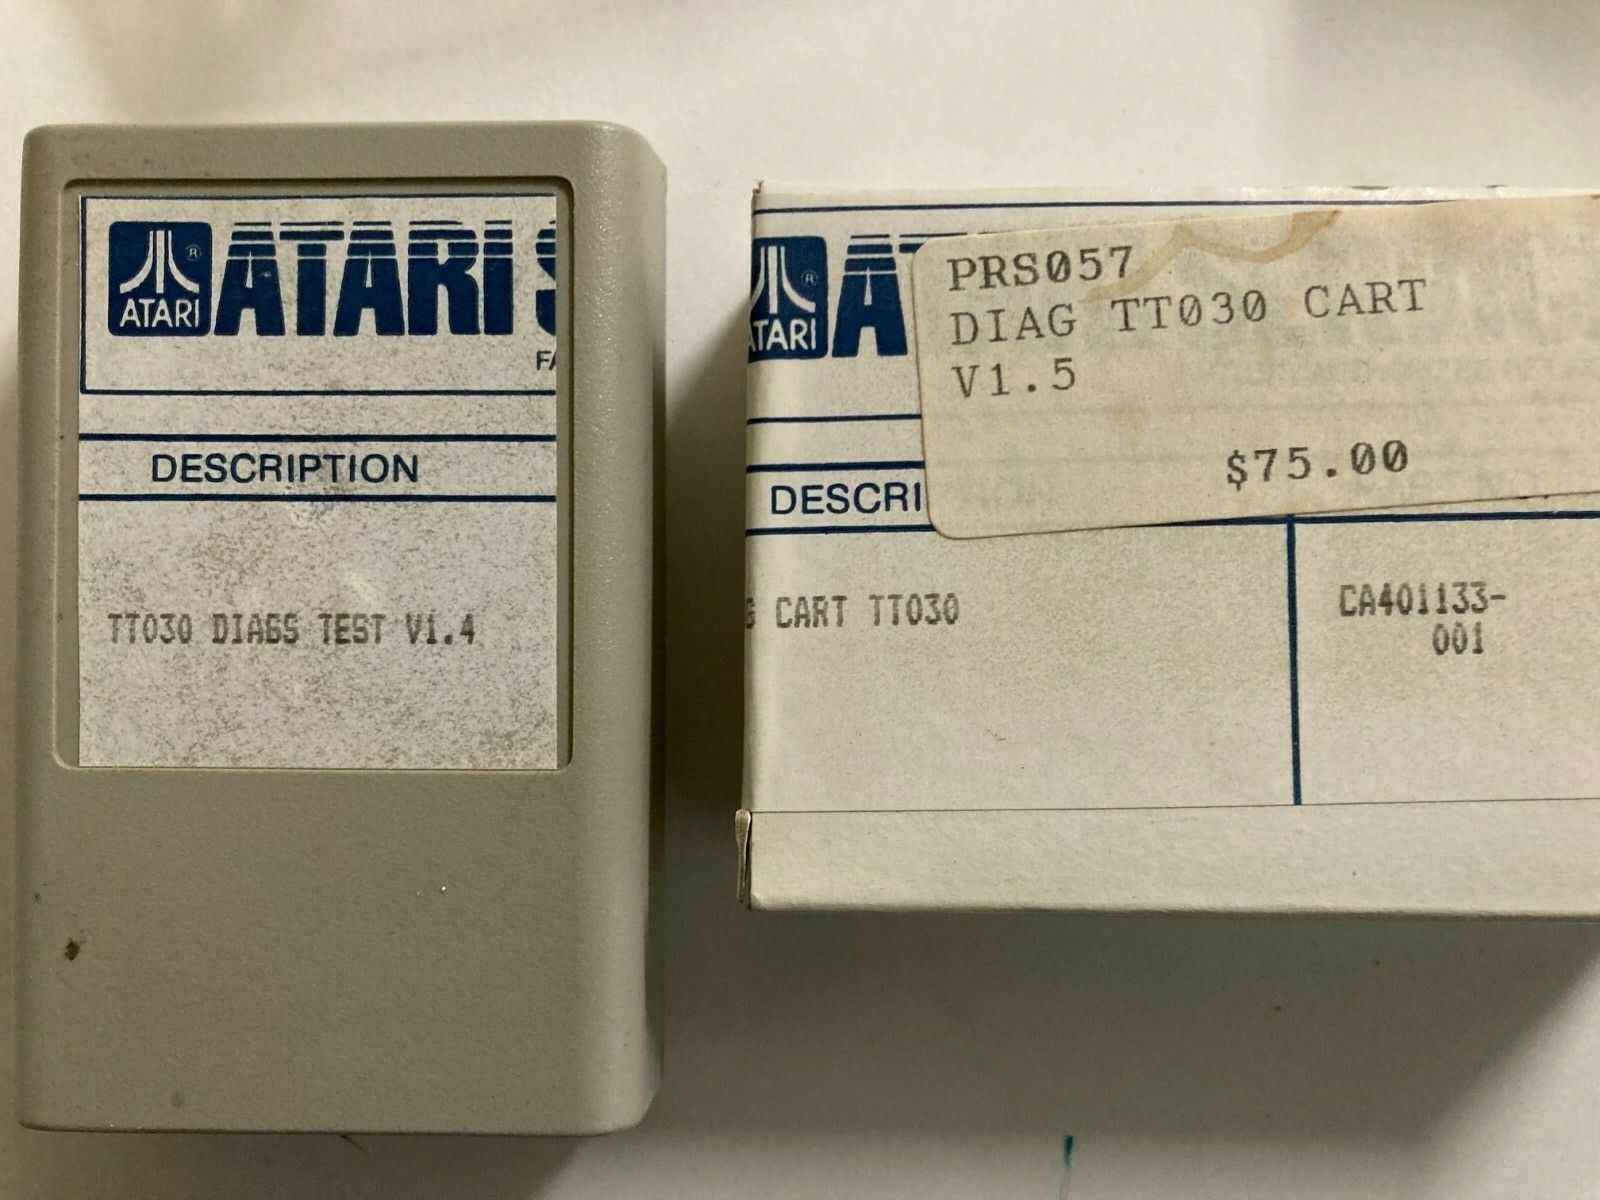 DIAGNOSTIC CARTRIDGE Atari TT V1.4 NEW ORIGINAL CA401133